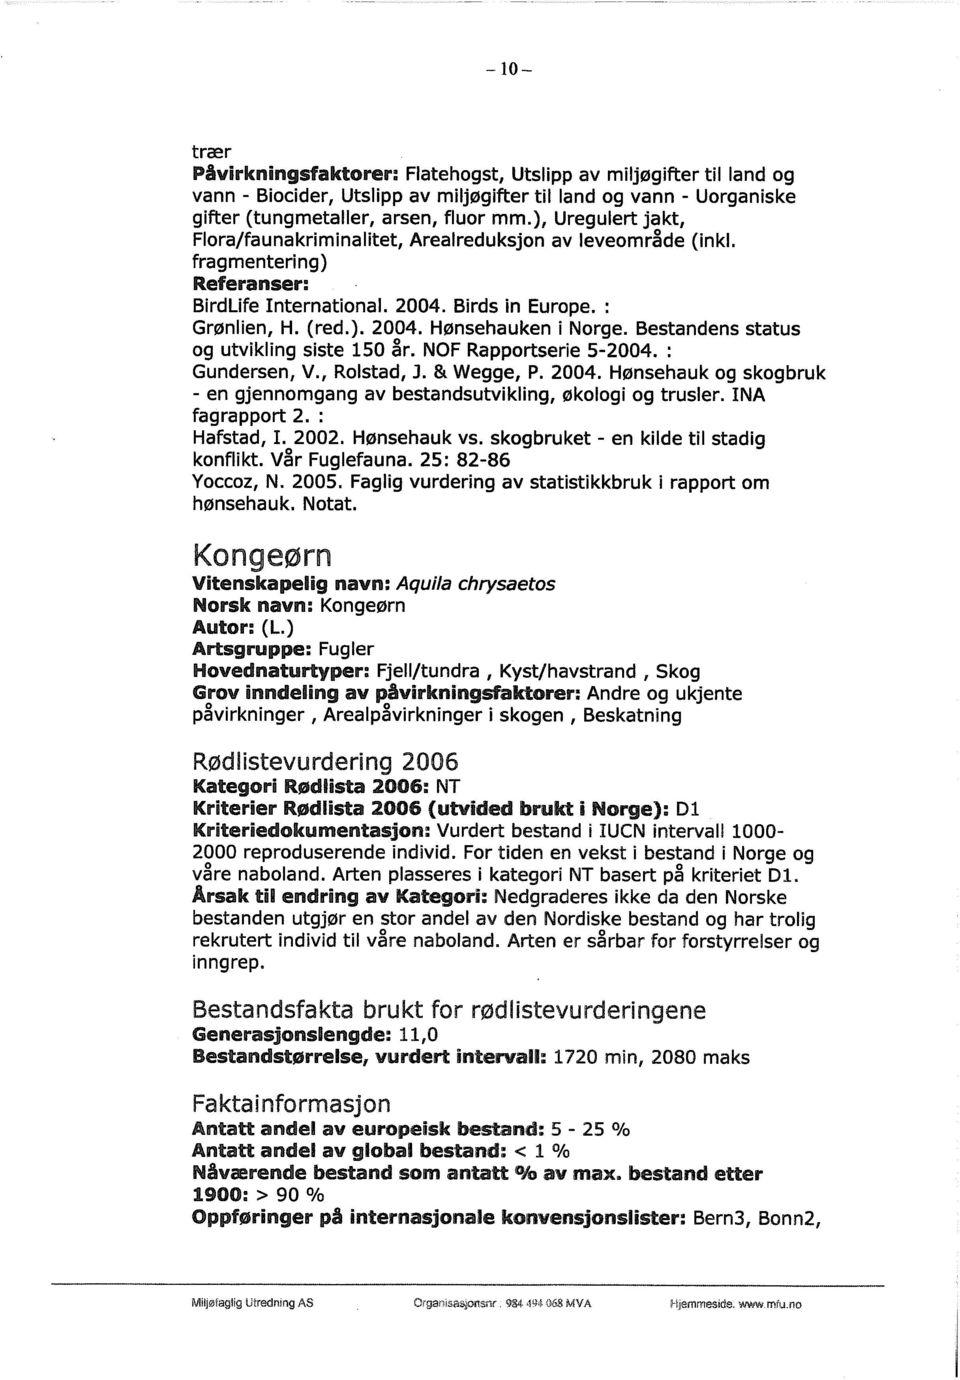 Bestandens status og utvikling siste 150 år. NOF Rapportserie 5-2004. : Gundersen, V., Rotstad, 3. & Wegge, P. 2004. Hønsehauk og skogbruk - en gjennomgang av bestandsutvikling, økologi og trusler.